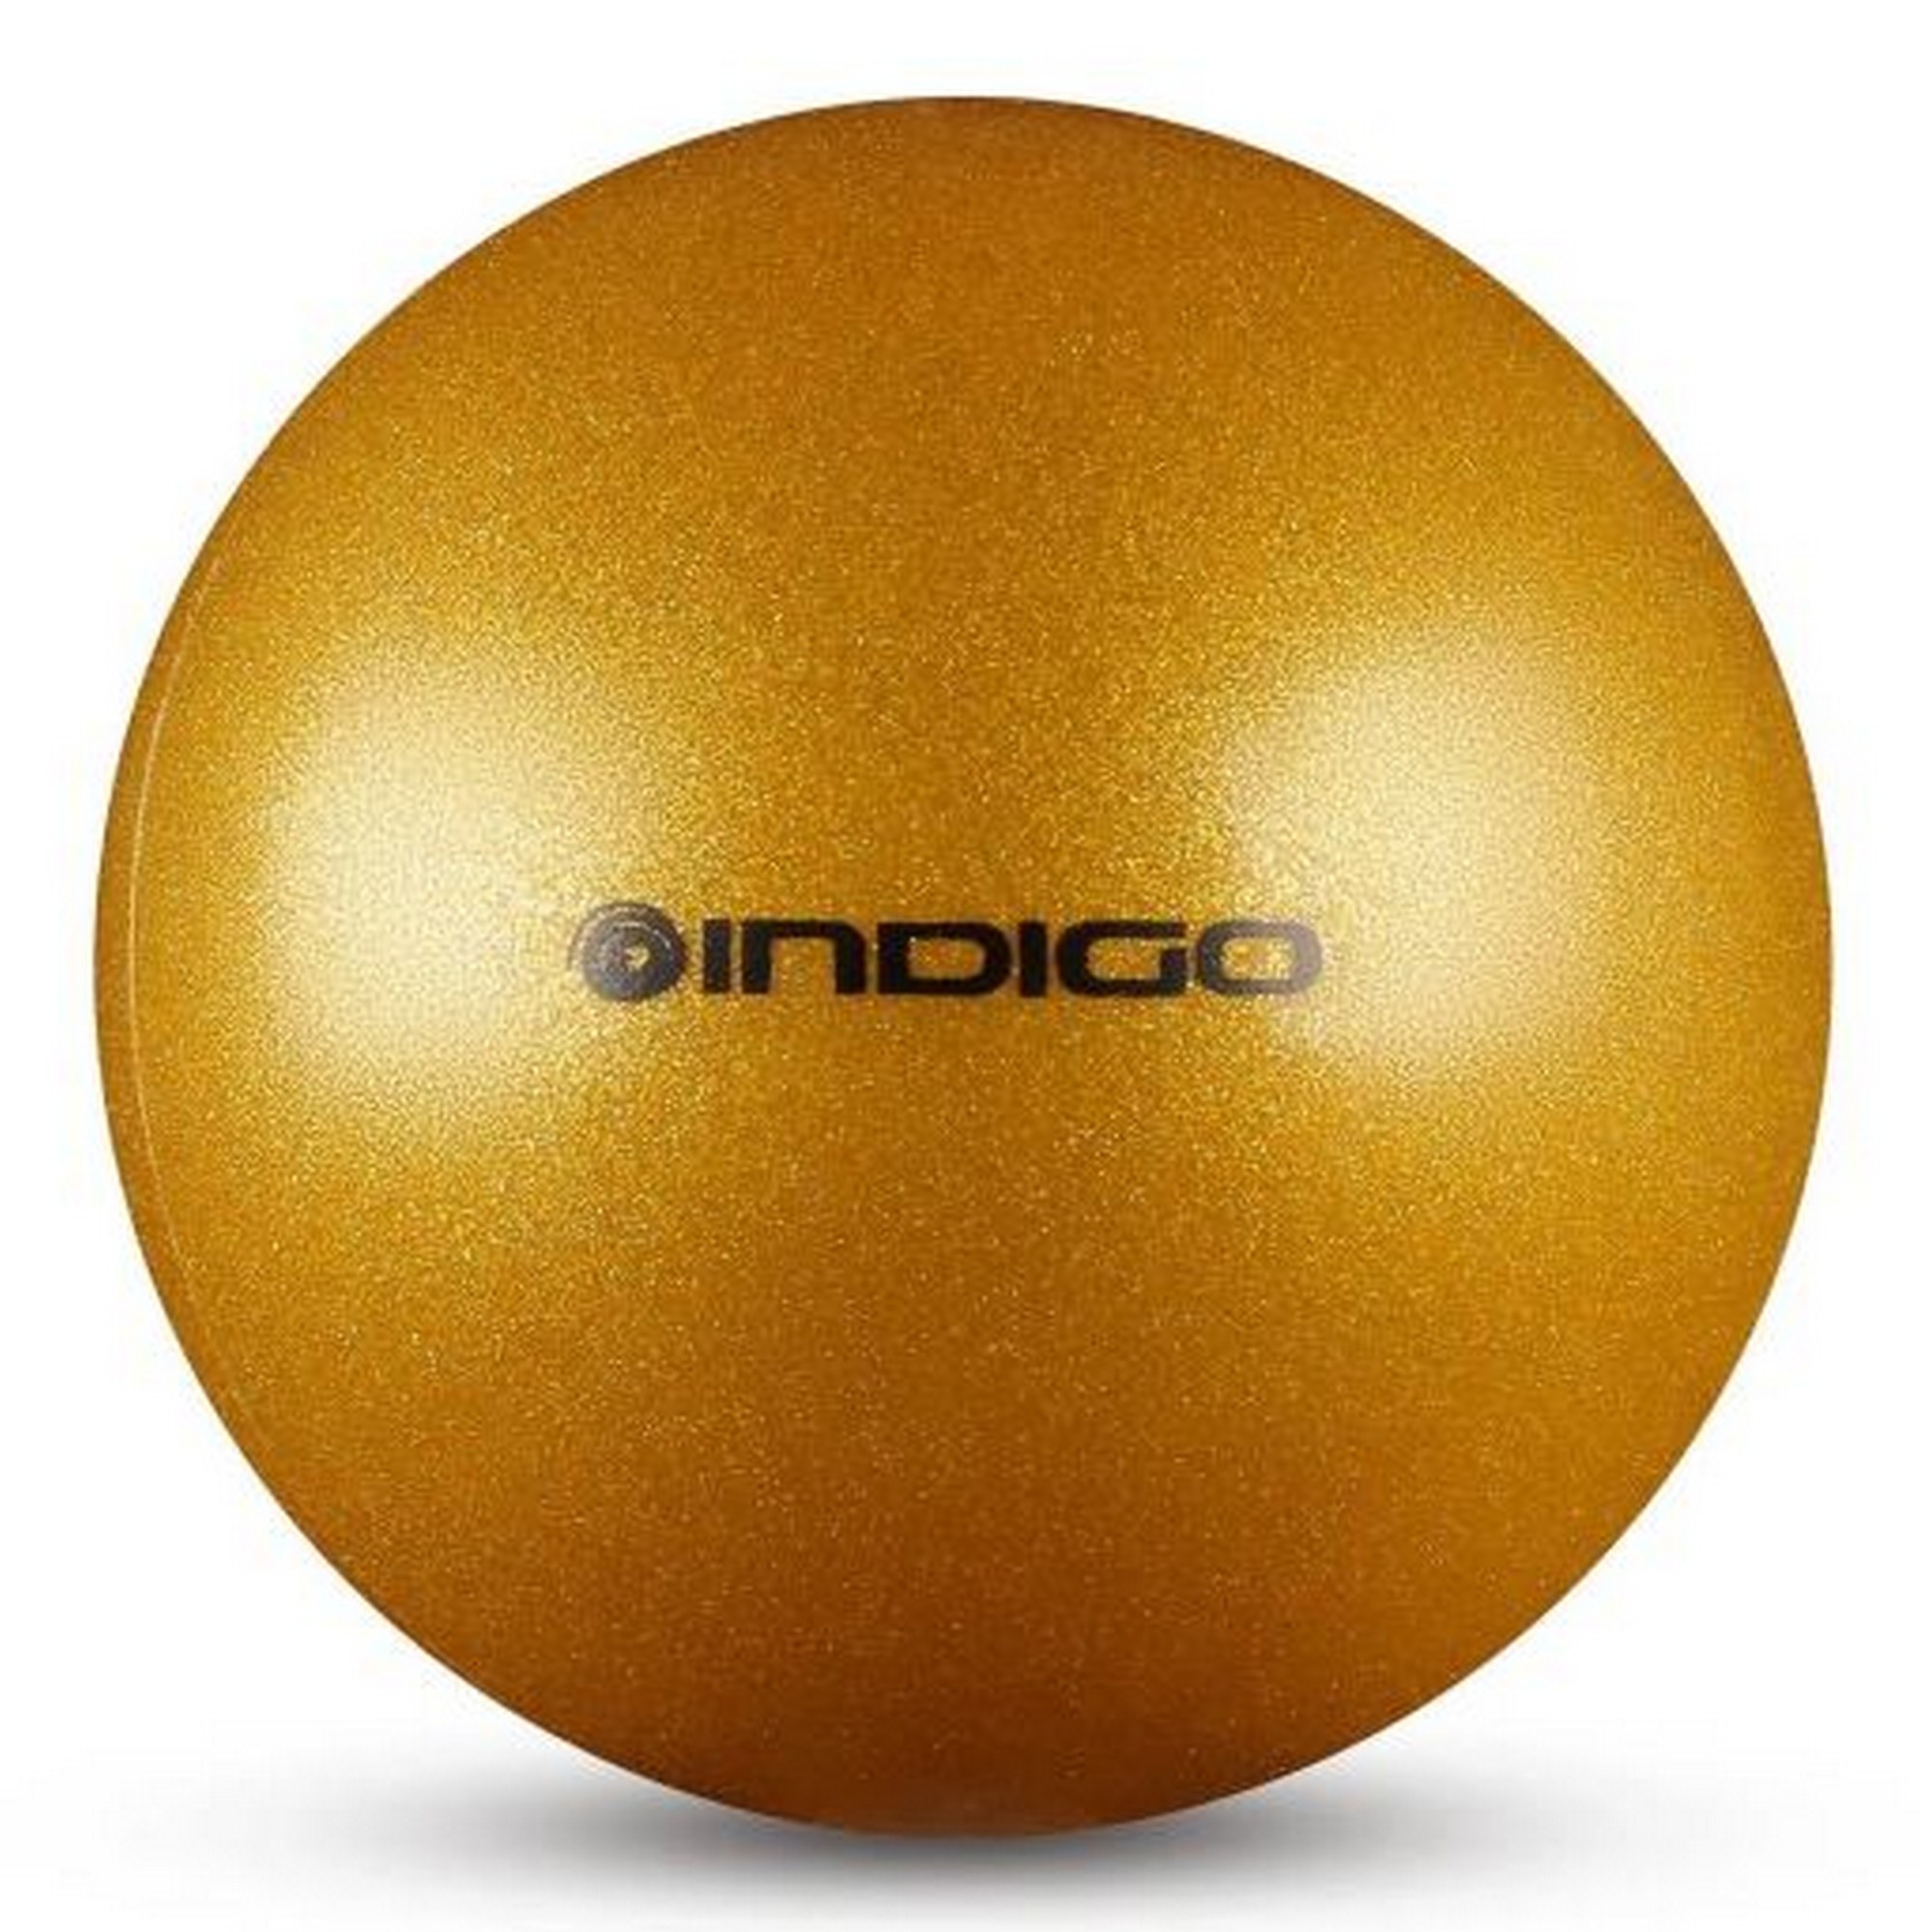 Мяч для художественной гимнастики металлик d19 см Indigo IN118 с блеcтками золотой